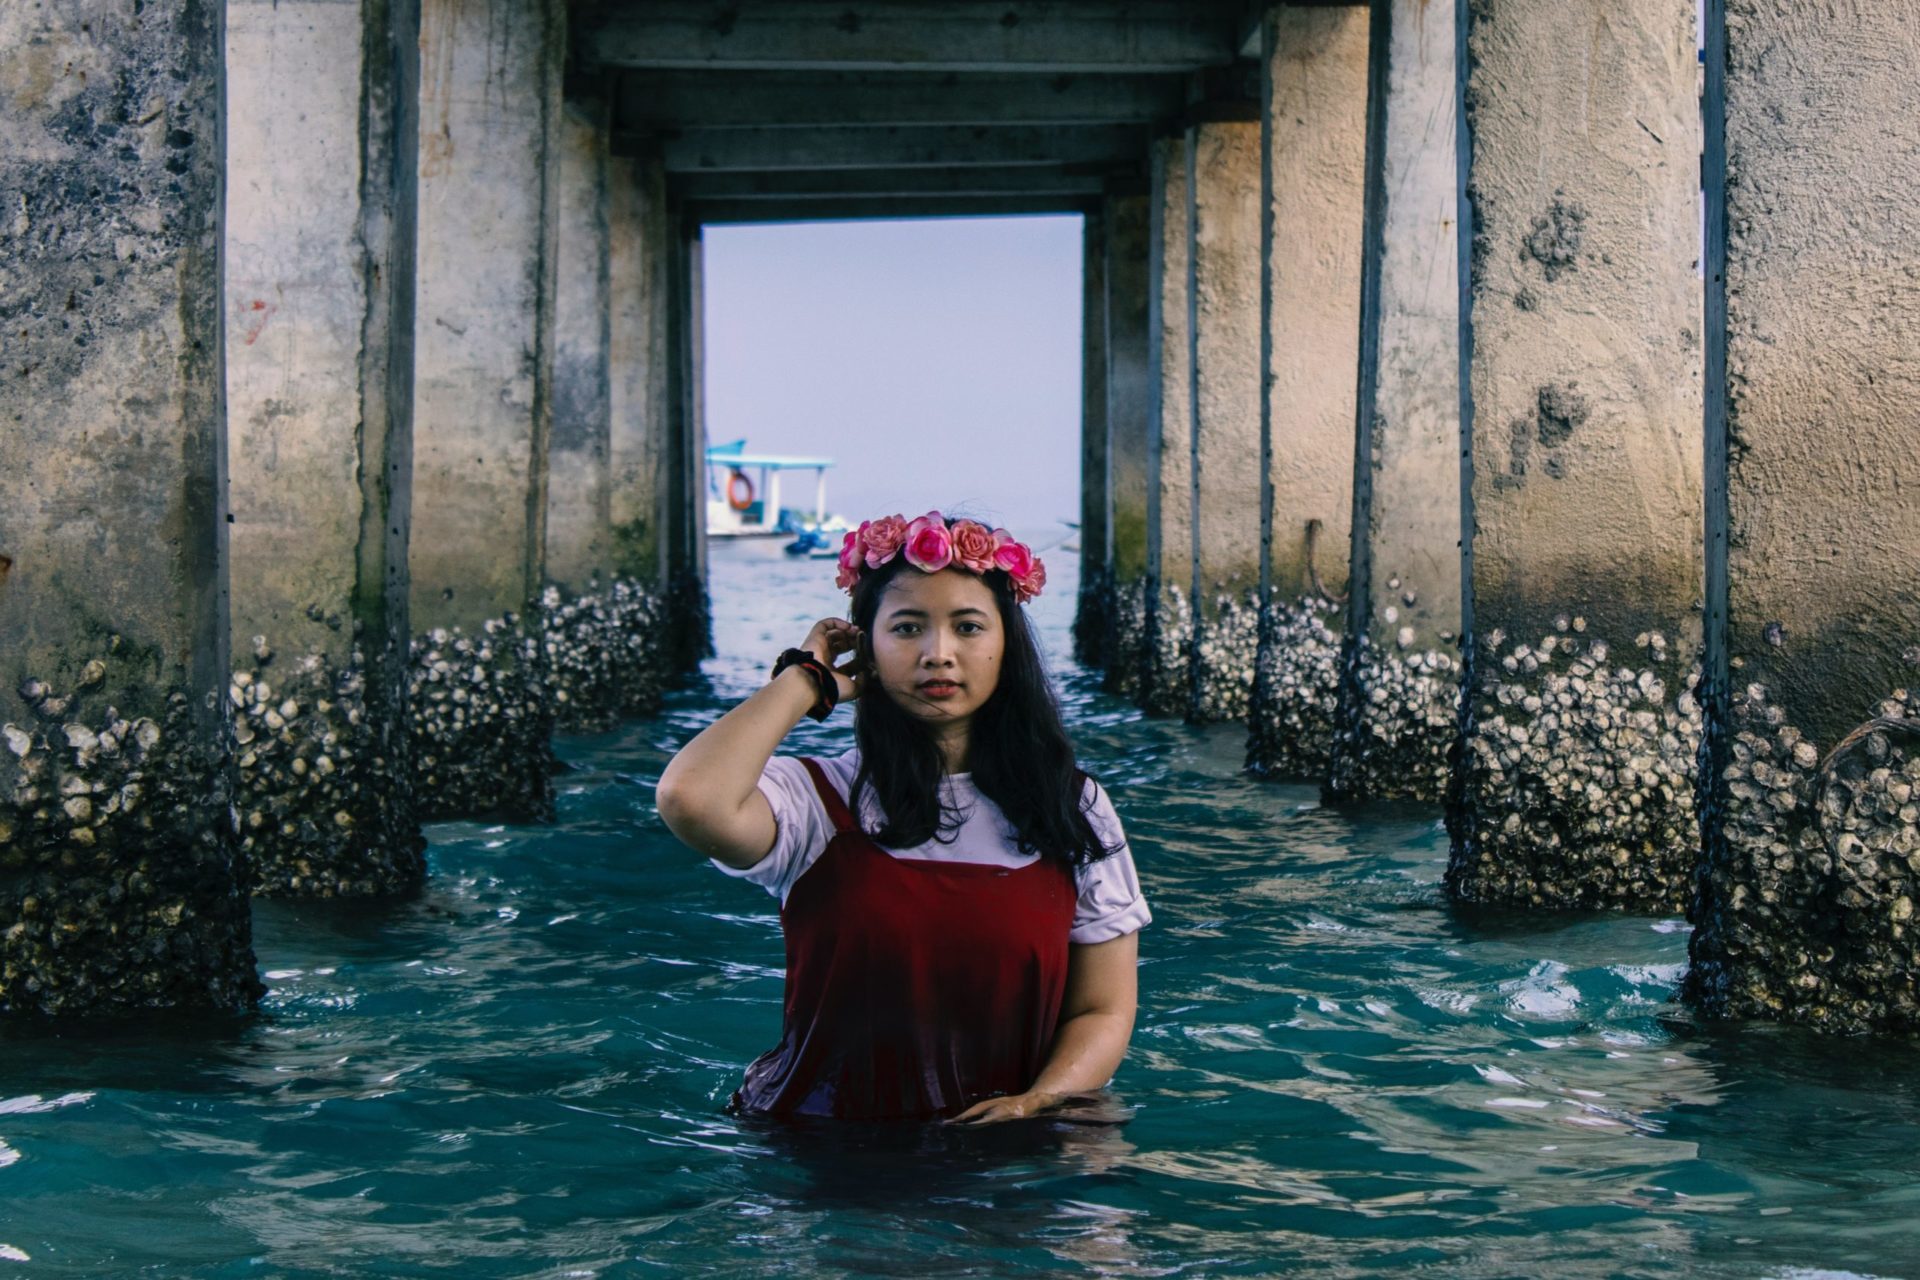 Indonesia | Adhista comparte sus imágenes de la isla de Lombok [Artistas Emergentes]